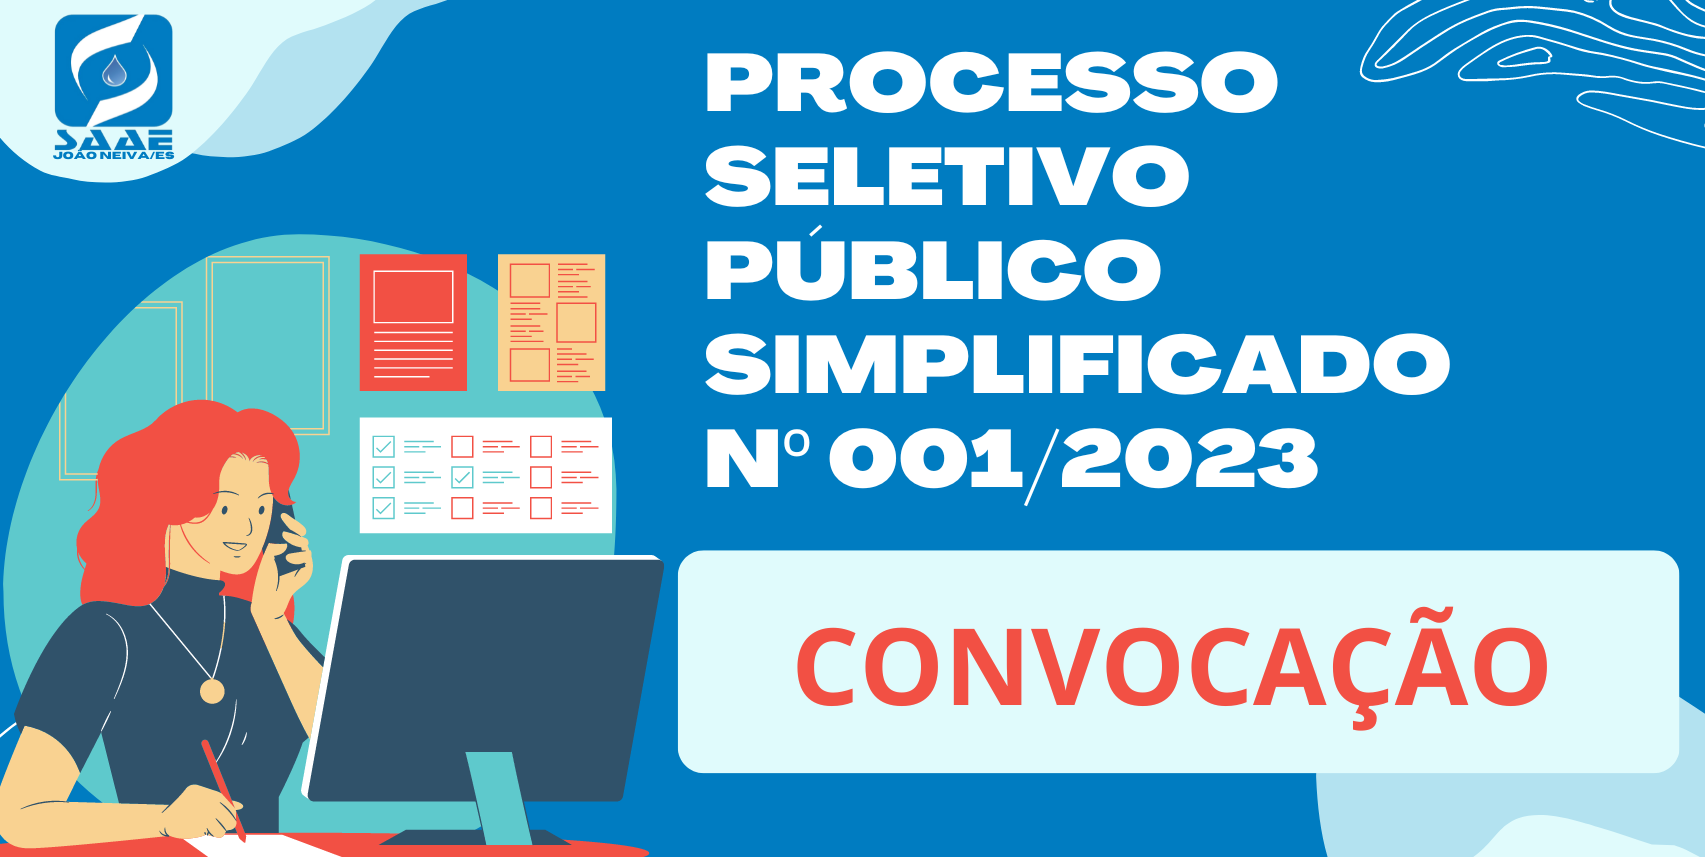 EDITAL DE CONVOCAÇÃO Nº 004/2023 - PROCESSO SELETIVO PÚBLICO SIMPLIFICADO Nº 001/2023